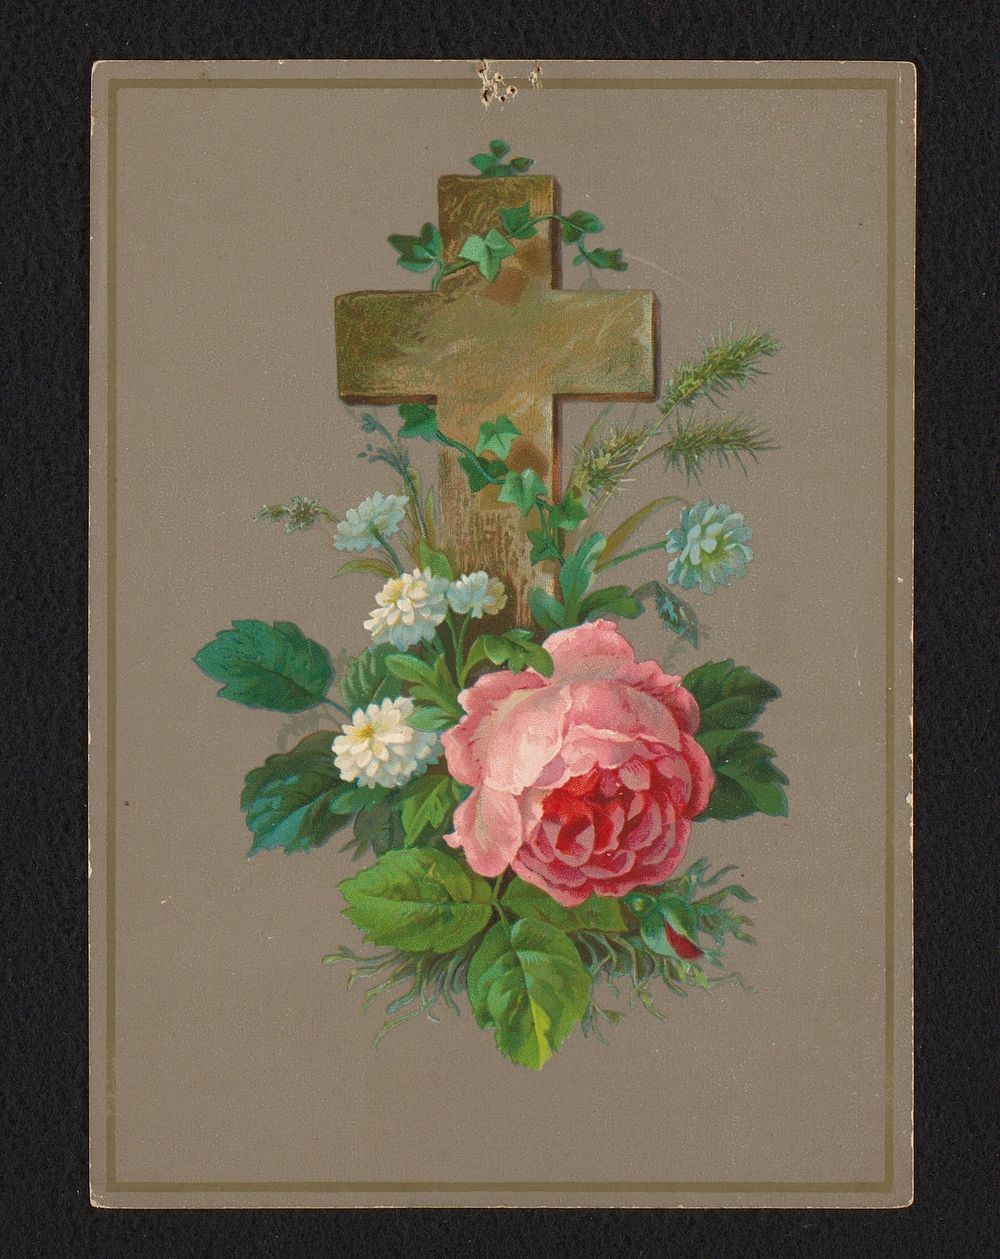 Herdenkingskaart met kruis, pioenroos en veldbloemen (c. 1850 - c. 1950) by anonymous